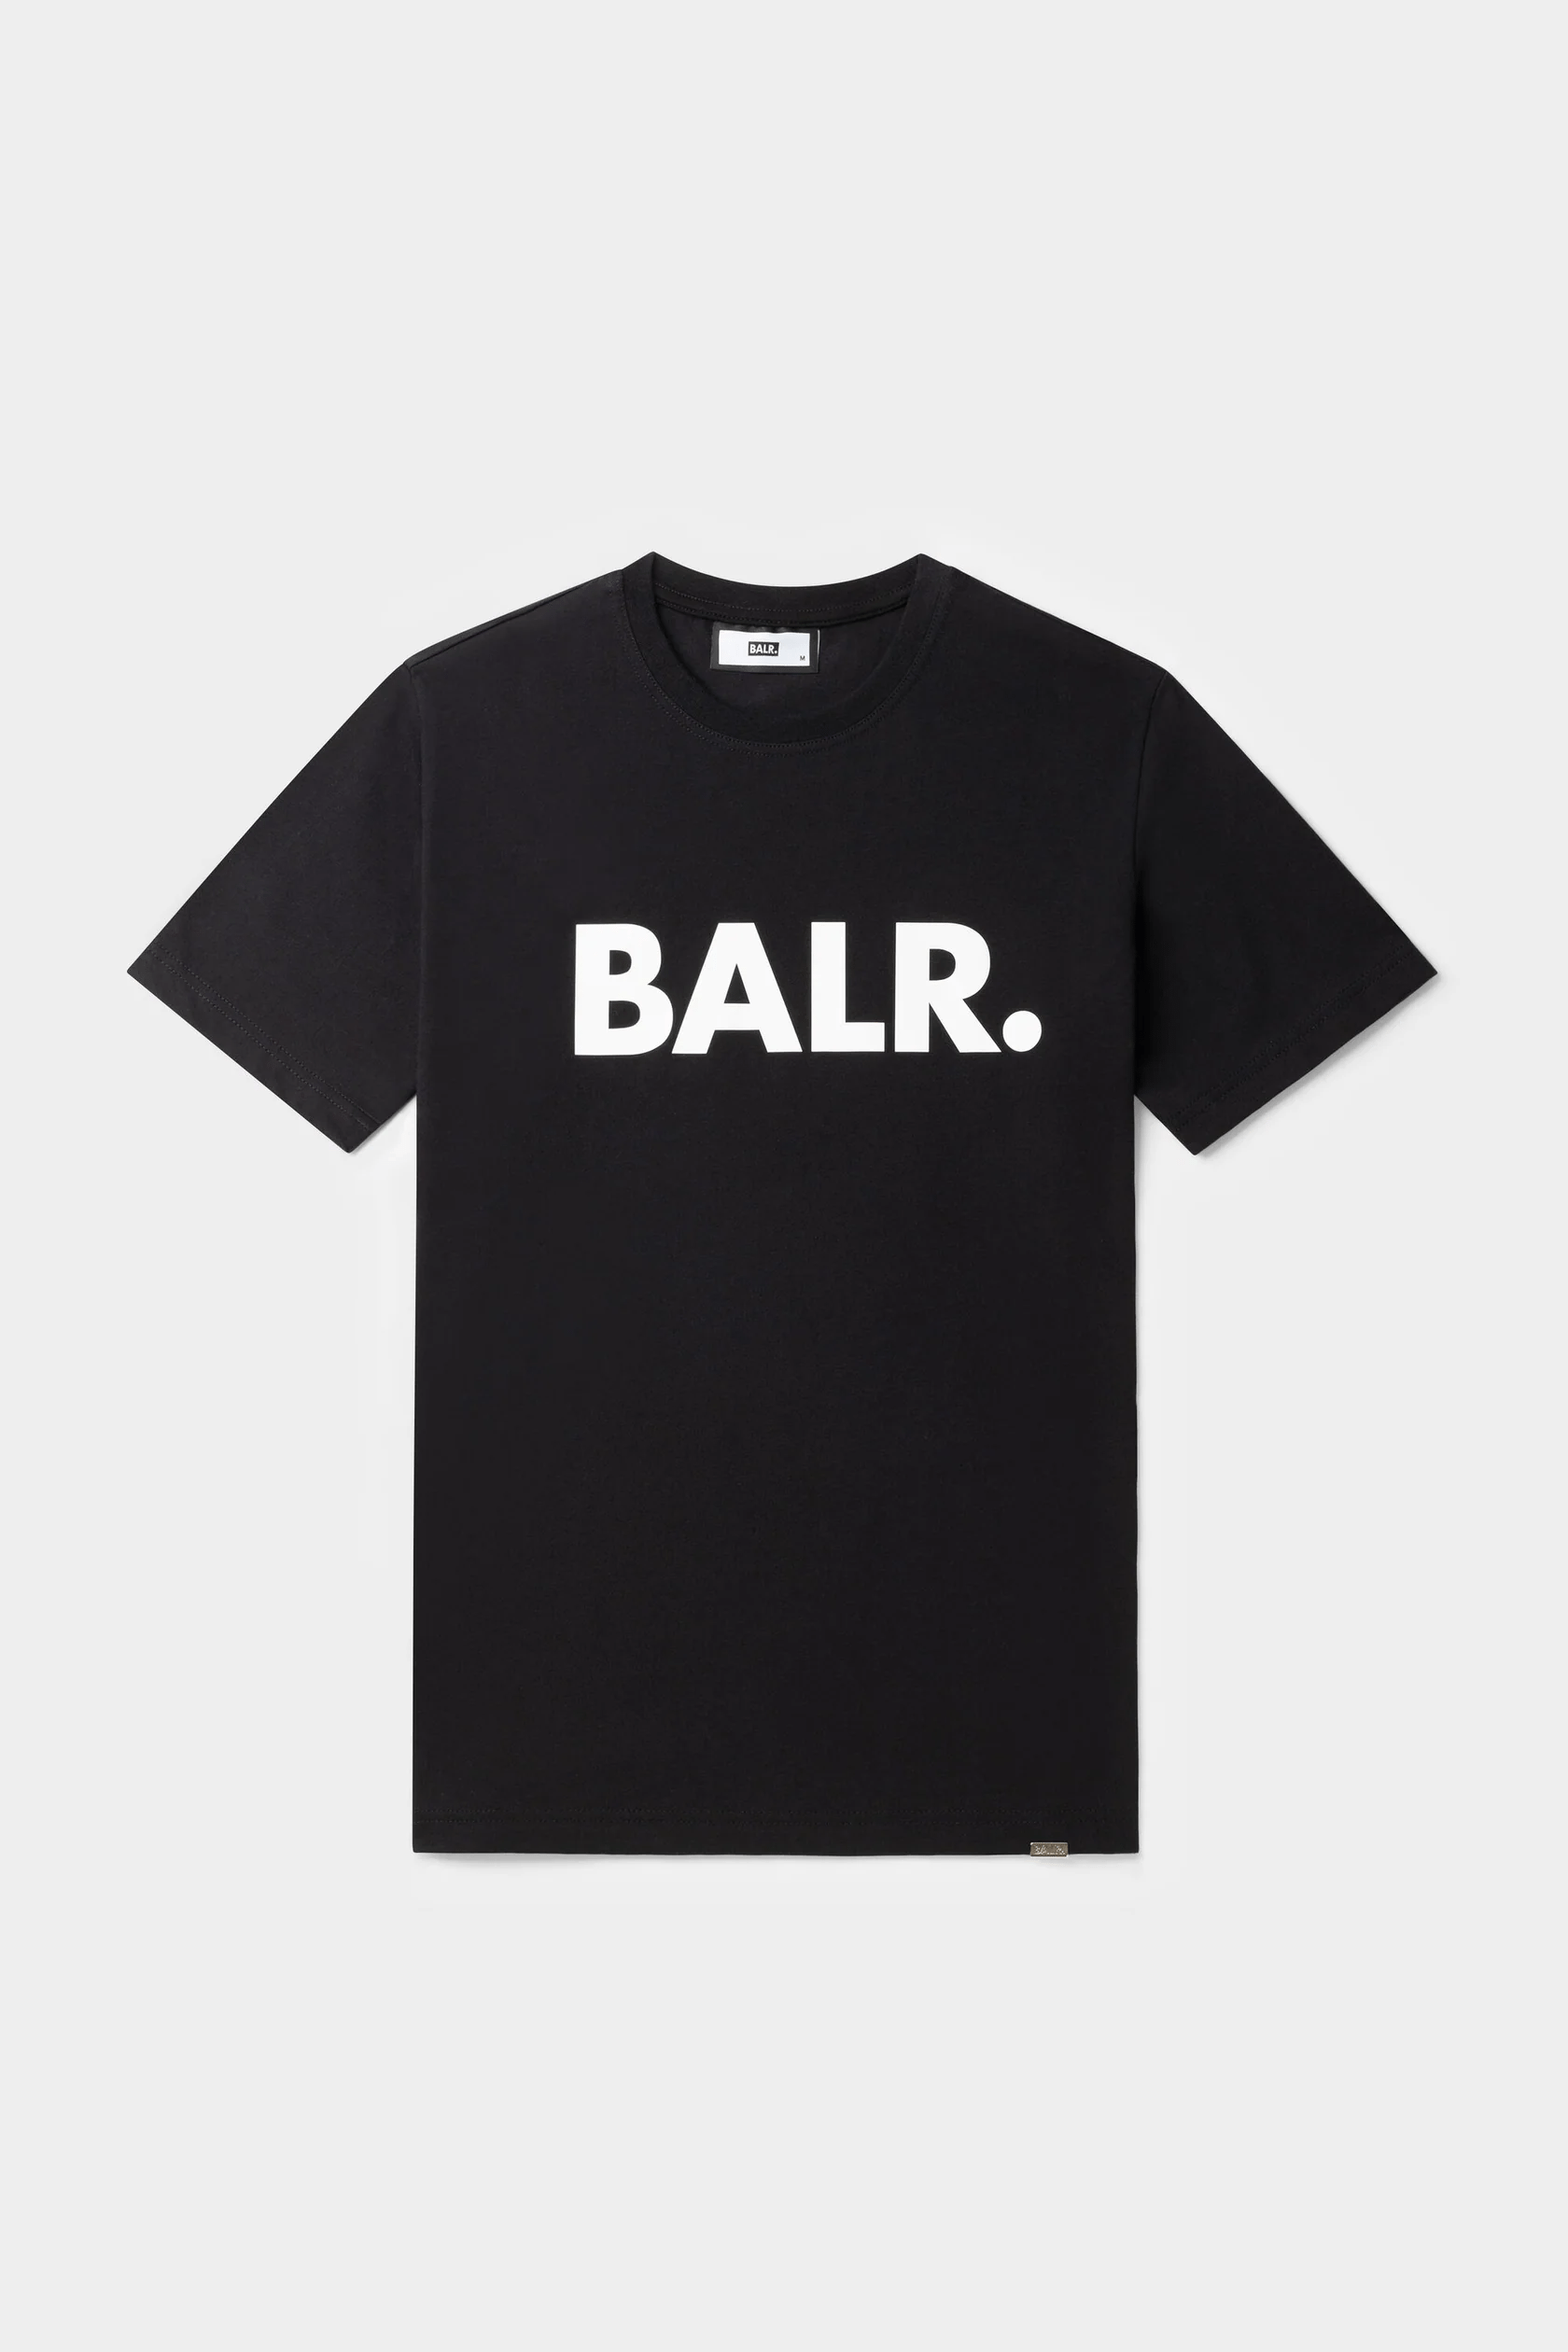 【期間限定値下げ】【新品・未使用】BALR. Tシャツ